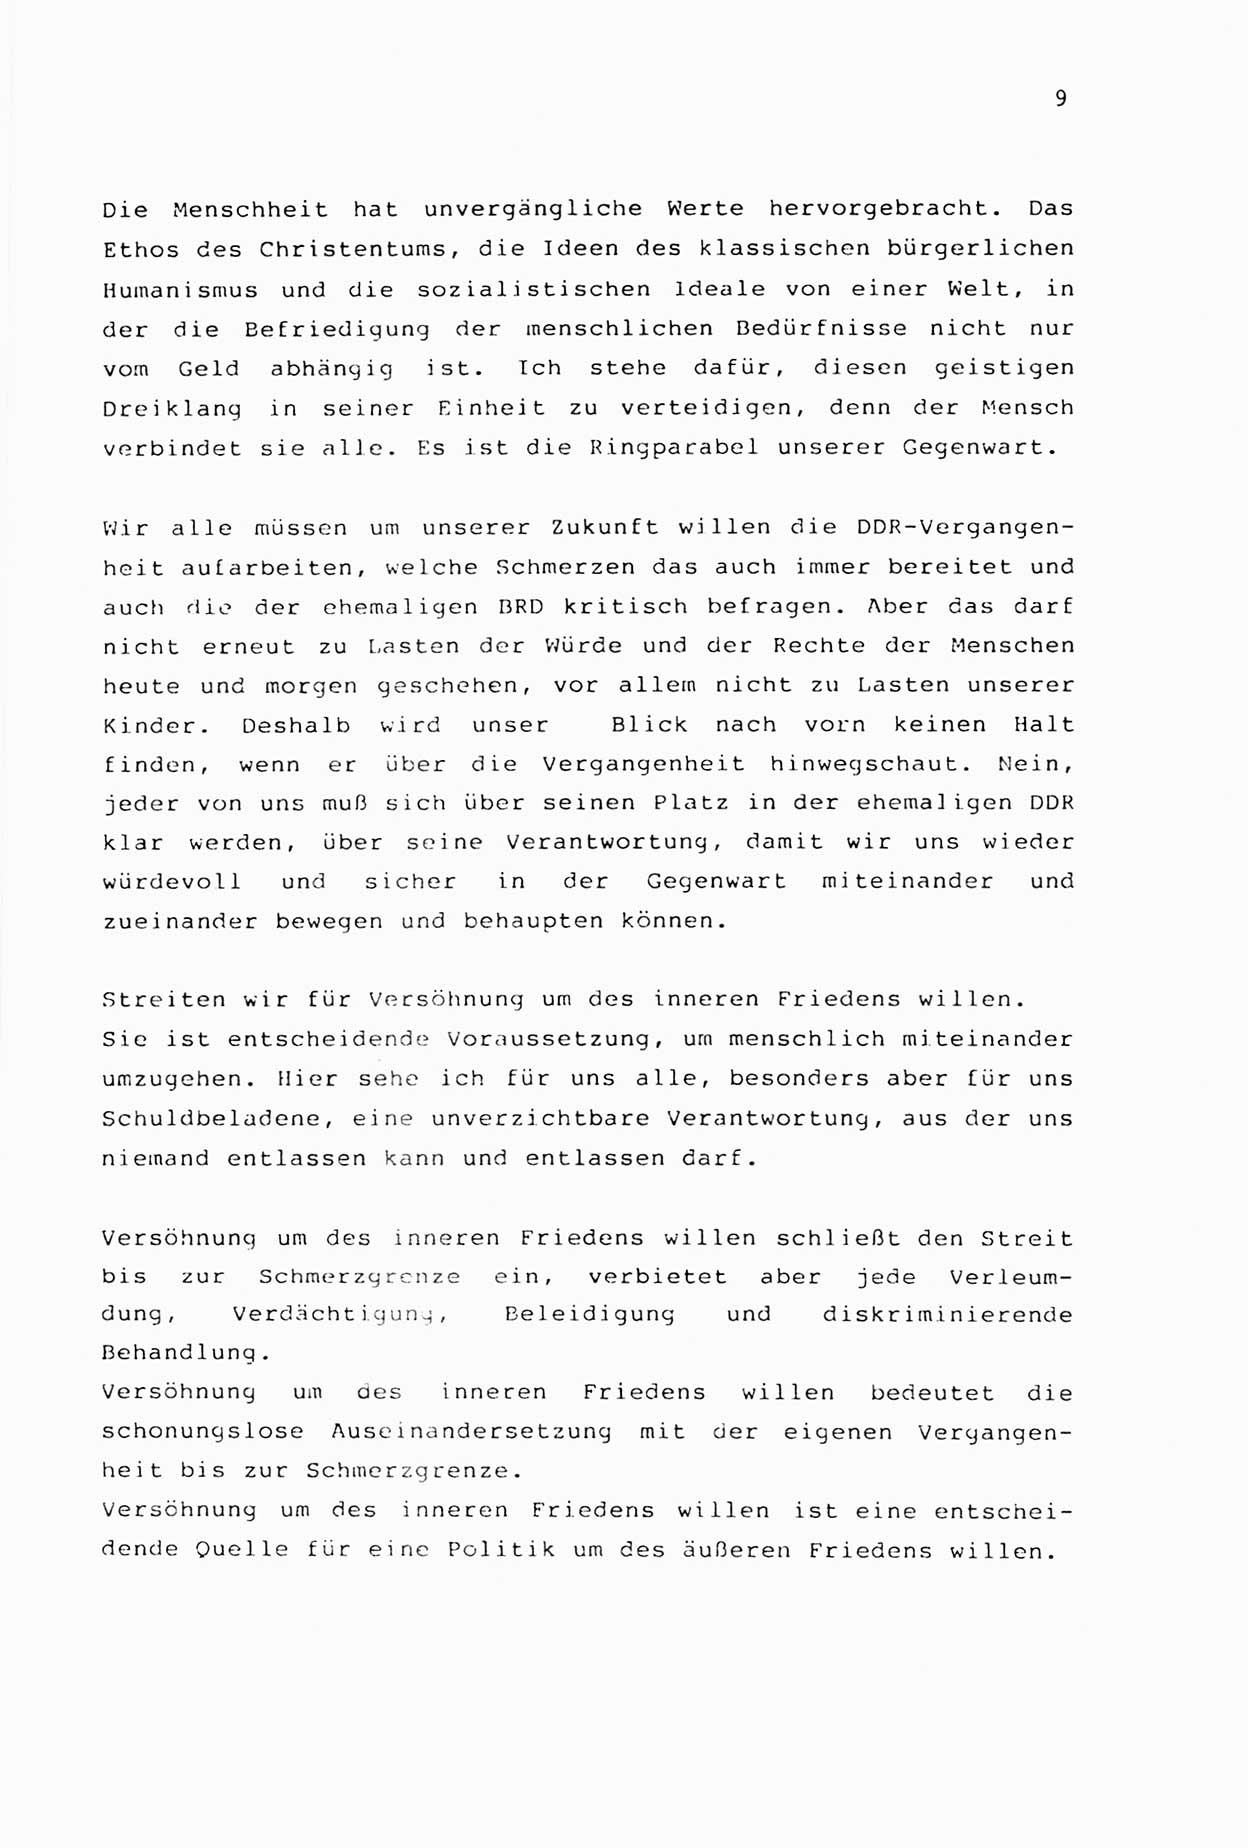 Zwie-Gespräch, Beiträge zur Aufarbeitung der Stasi-Vergangenheit [Deutsche Demokratische Republik (DDR)], Ausgabe Nr. 2, Berlin 1991, Seite 9 (Zwie-Gespr. Ausg. 2 1991, S. 9)